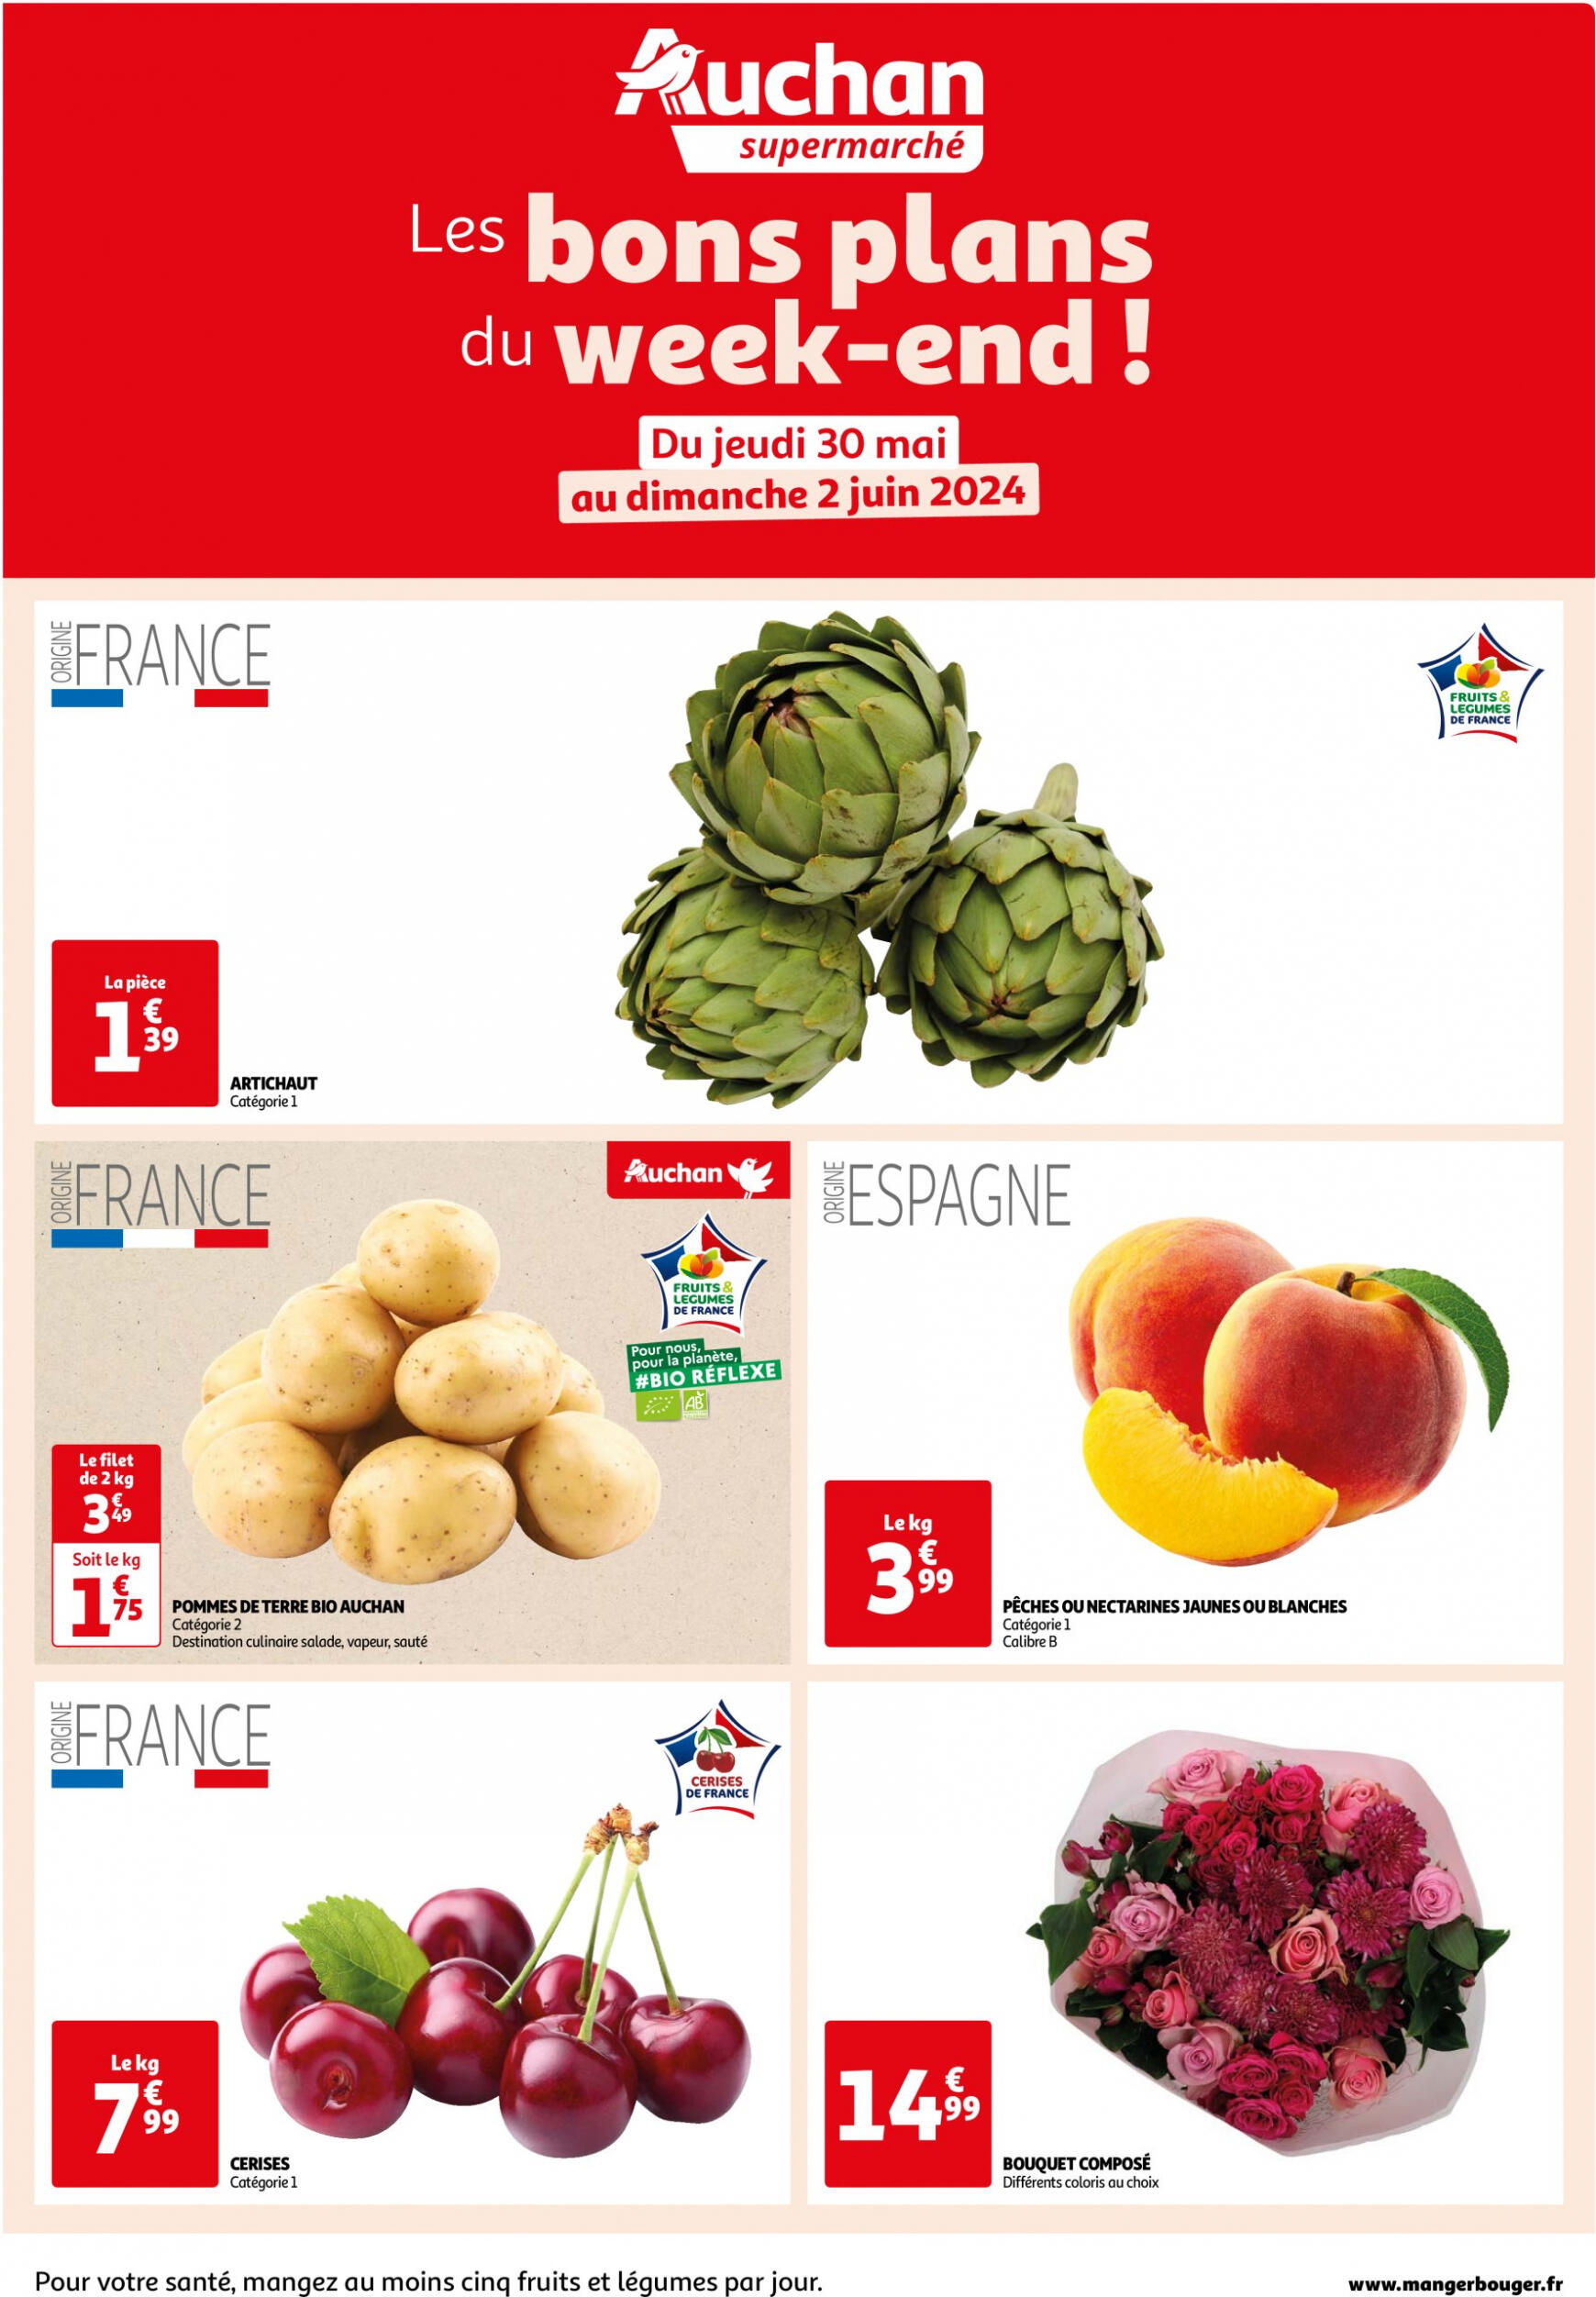 auchan - Auchan Supermarché - Les bons plans du week-end dans votre super ! folder huidig 30.05. - 02.06.